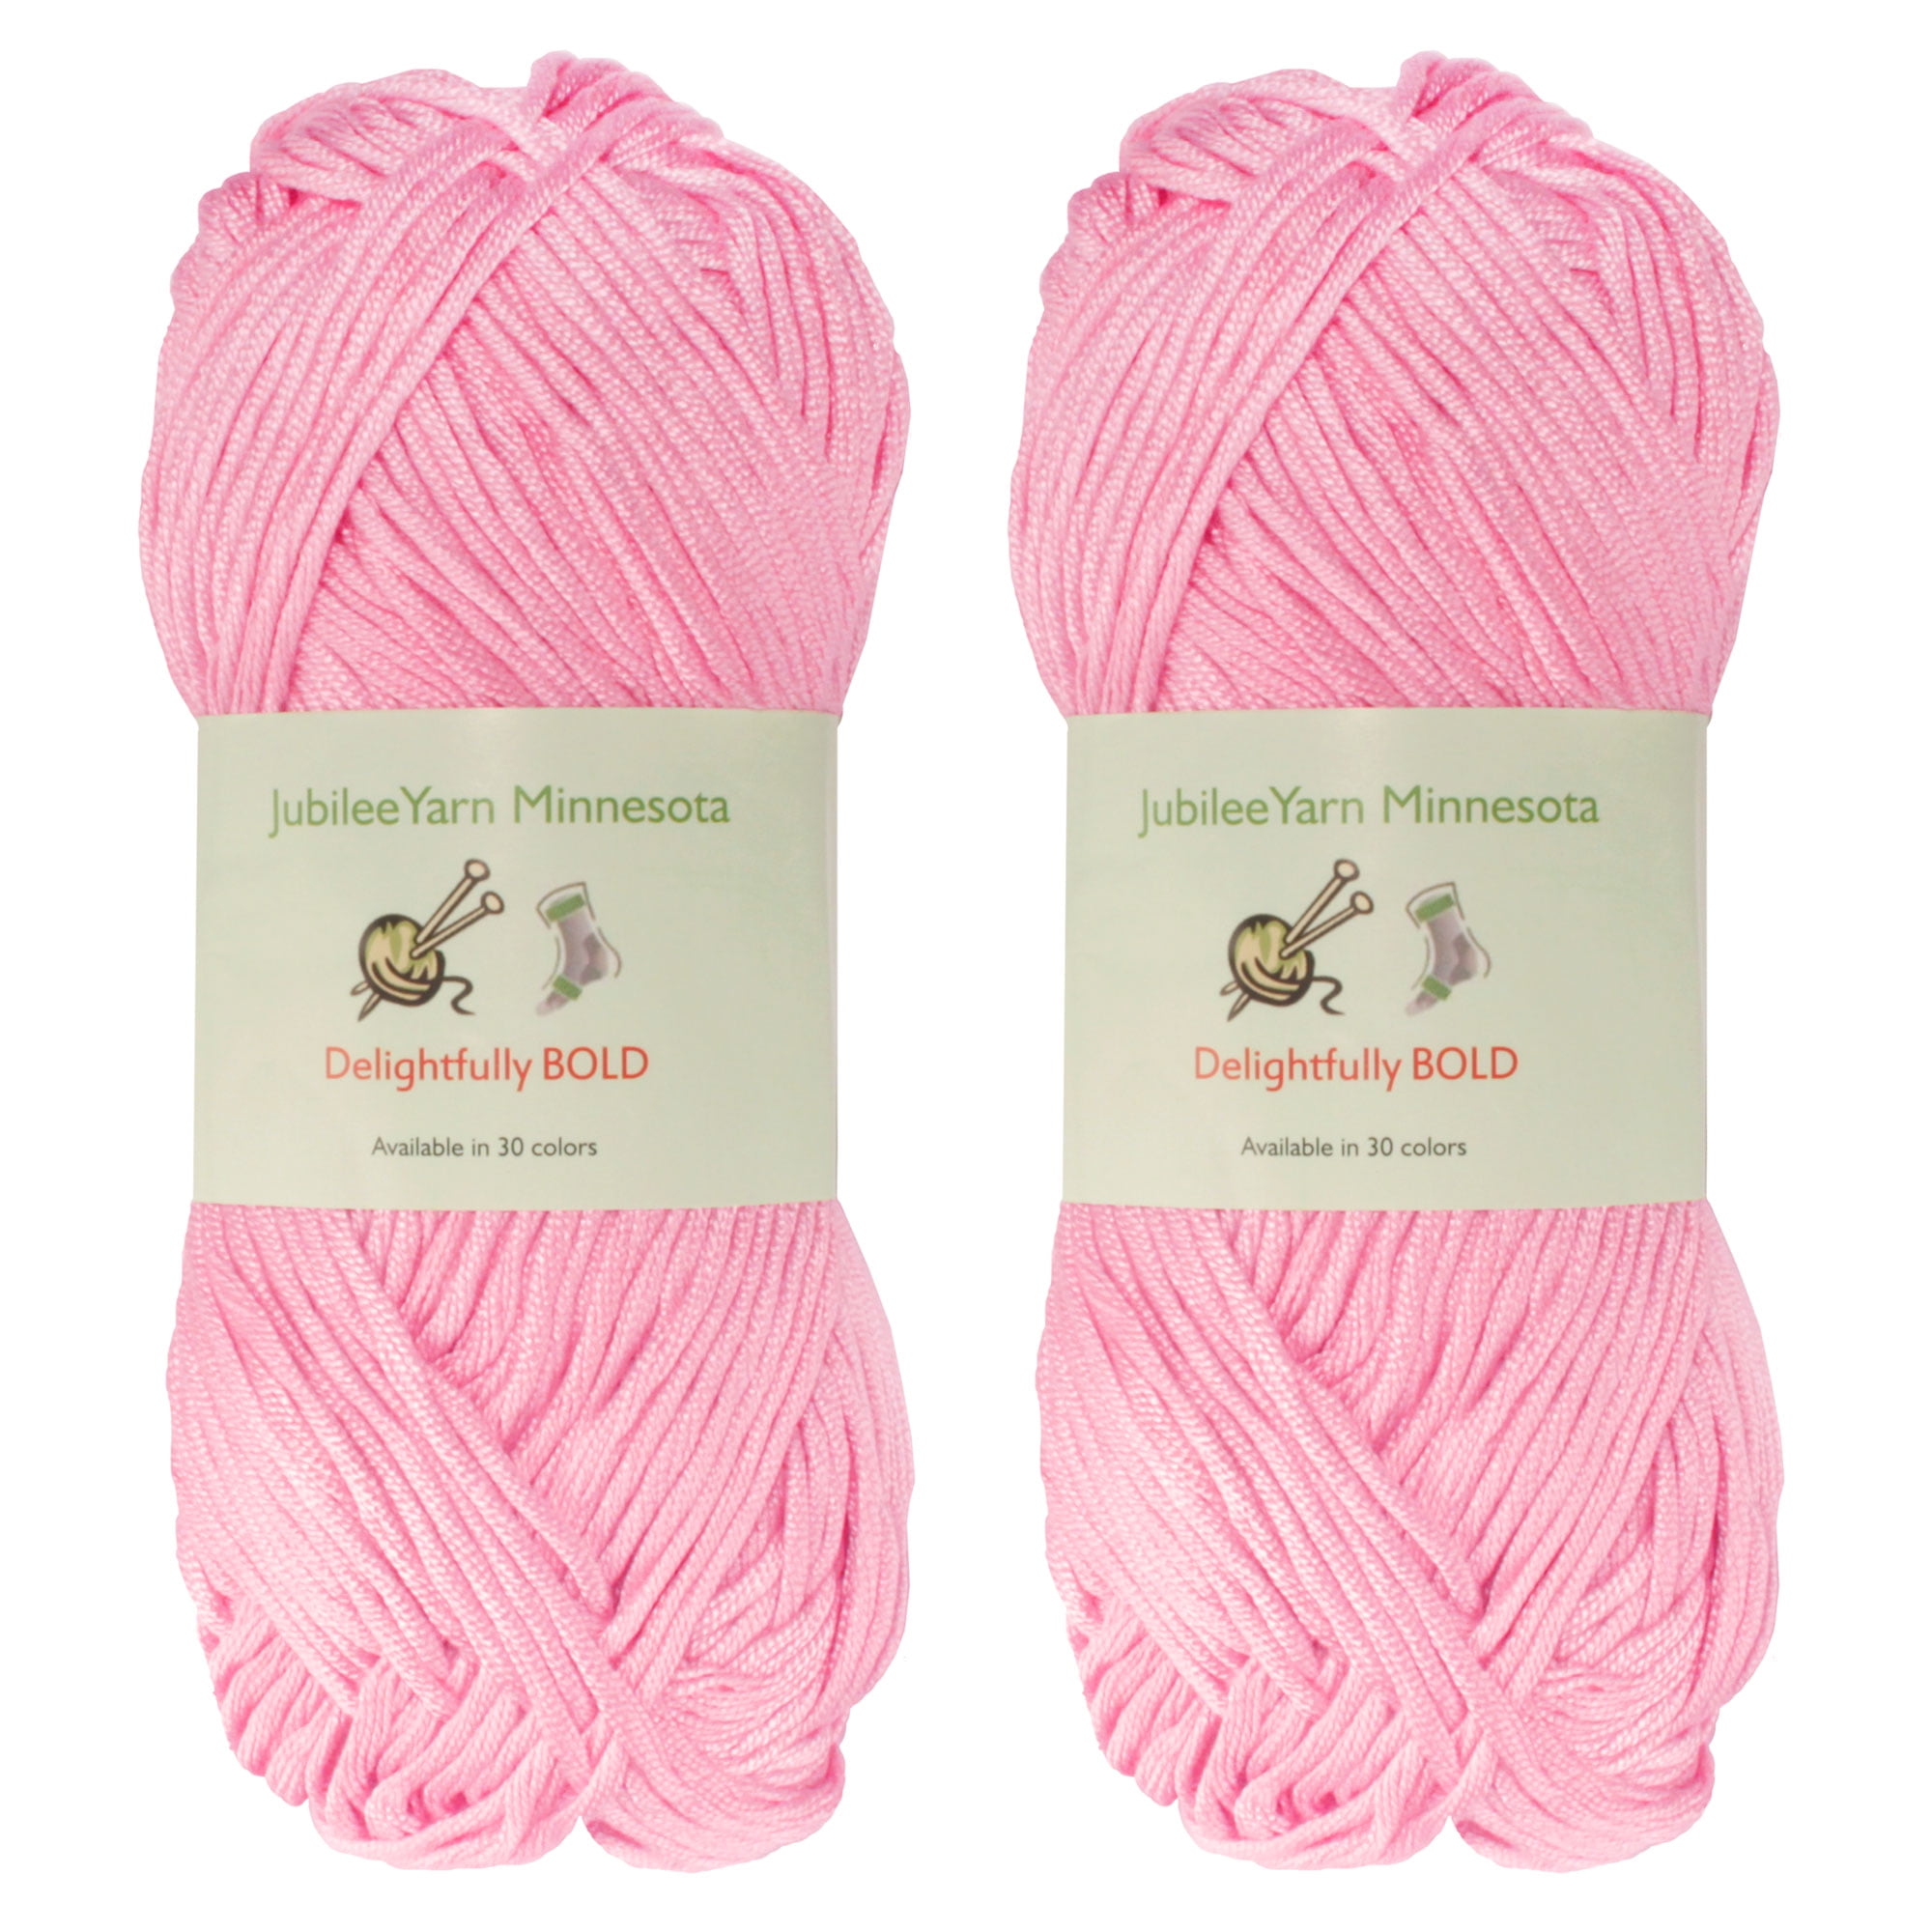 Petter 348-Light Pink — Wall of Yarn